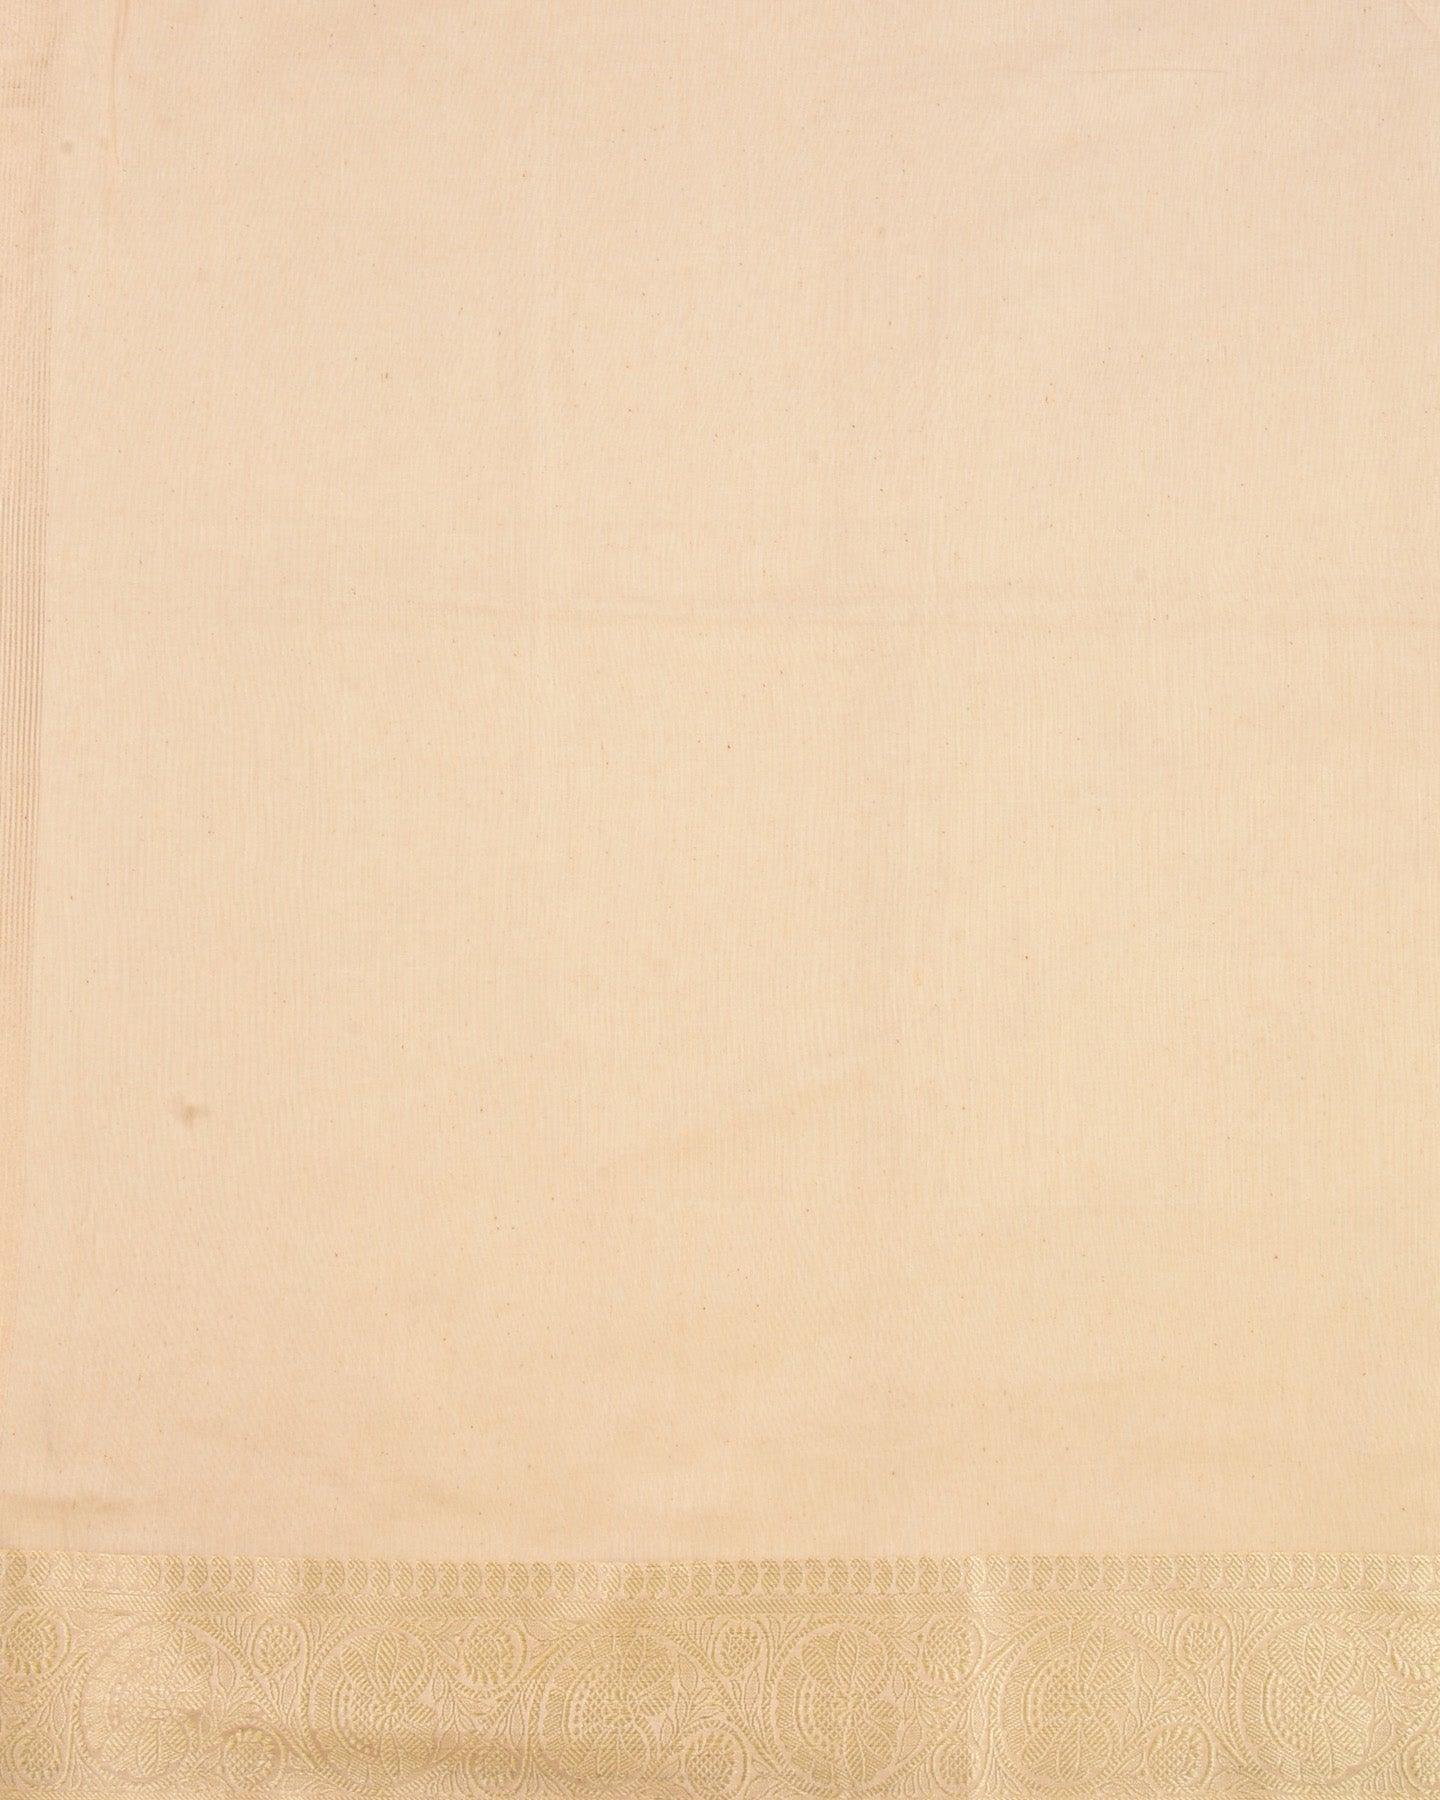 Almond White Banarasi Contemporary Brocade Woven Cotton Silk Saree with Zari Border - By HolyWeaves, Benares